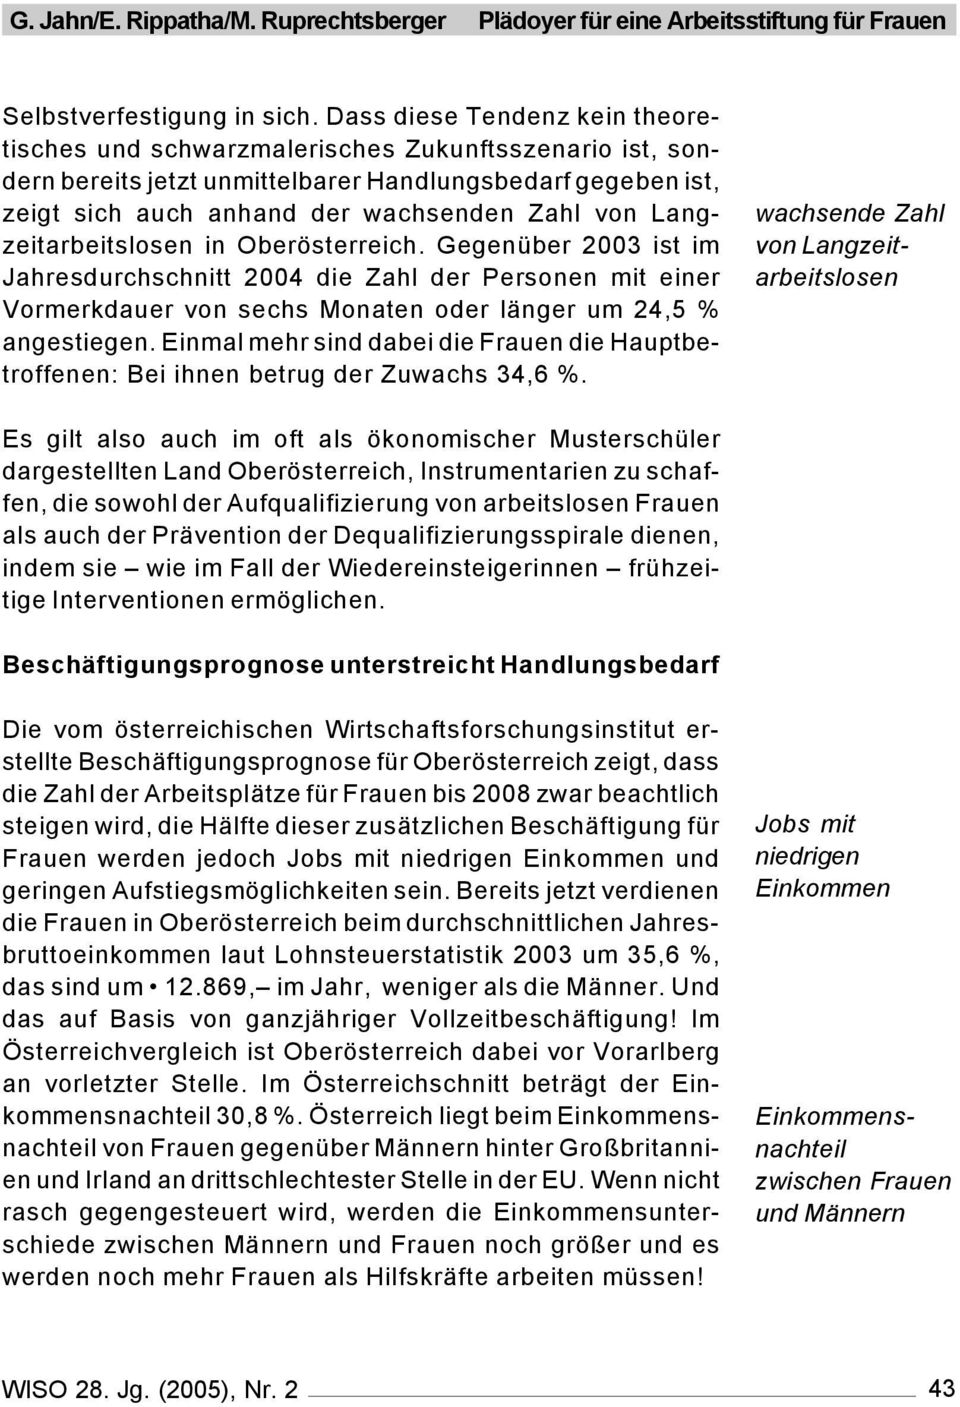 Langzeitarbeitslosen in Oberösterreich. Gegenüber 2003 ist im Jahresdurchschnitt 2004 die Zahl der Personen mit einer Vormerkdauer von sechs Monaten oder länger um 24,5 % angestiegen.